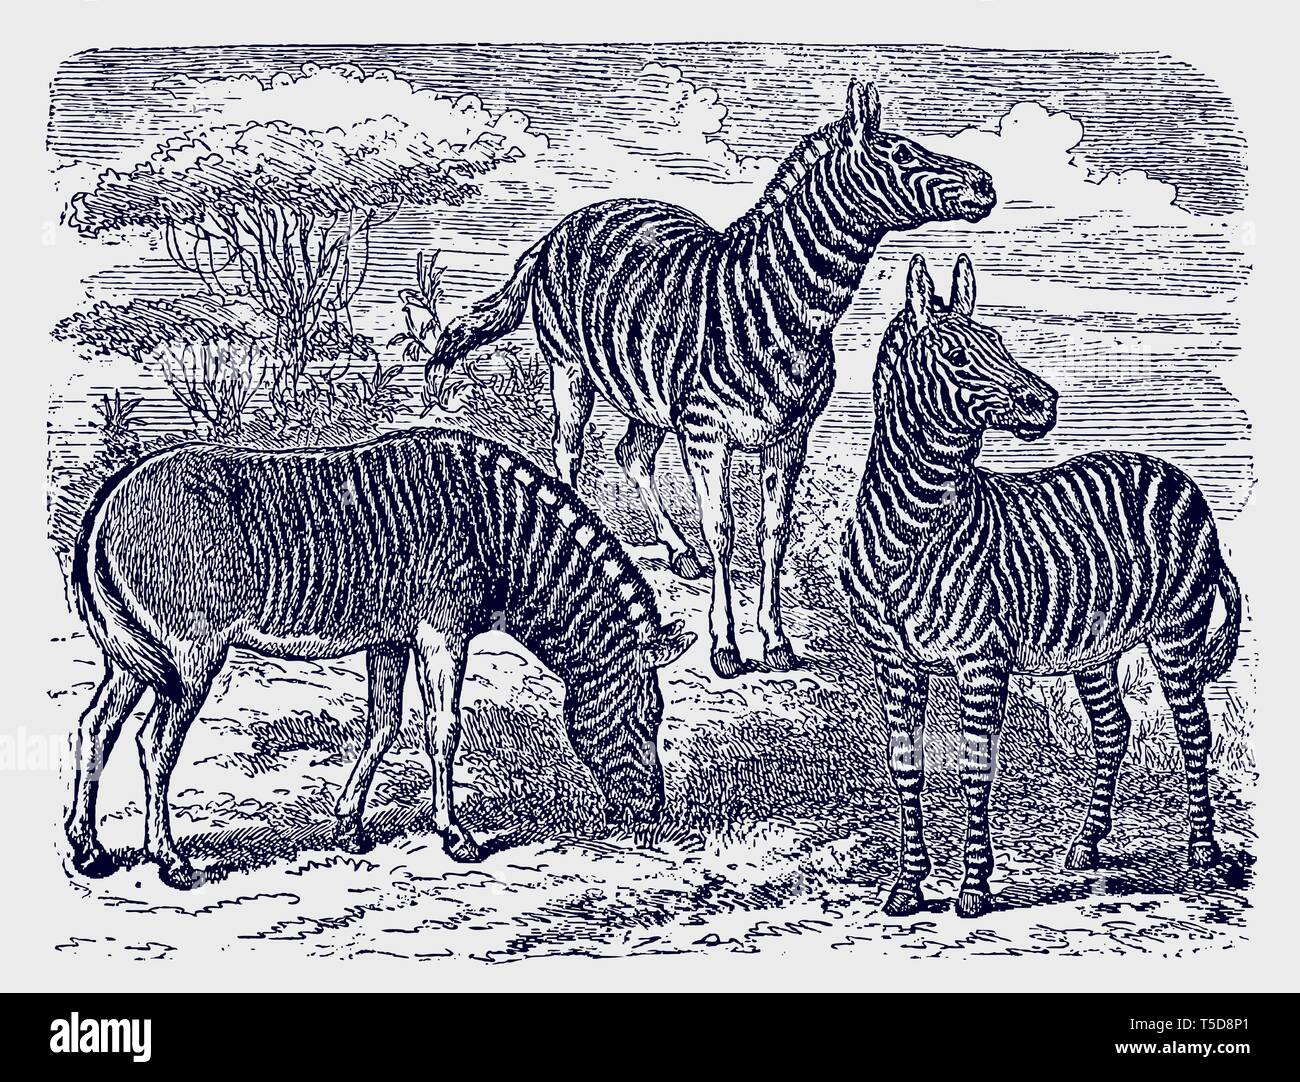 Deux zèbres (Equus zebra) et une espèce d'Afrique debout dans un quagga savane boisée paysage. Illustration après une gravure du xixe siècle Illustration de Vecteur